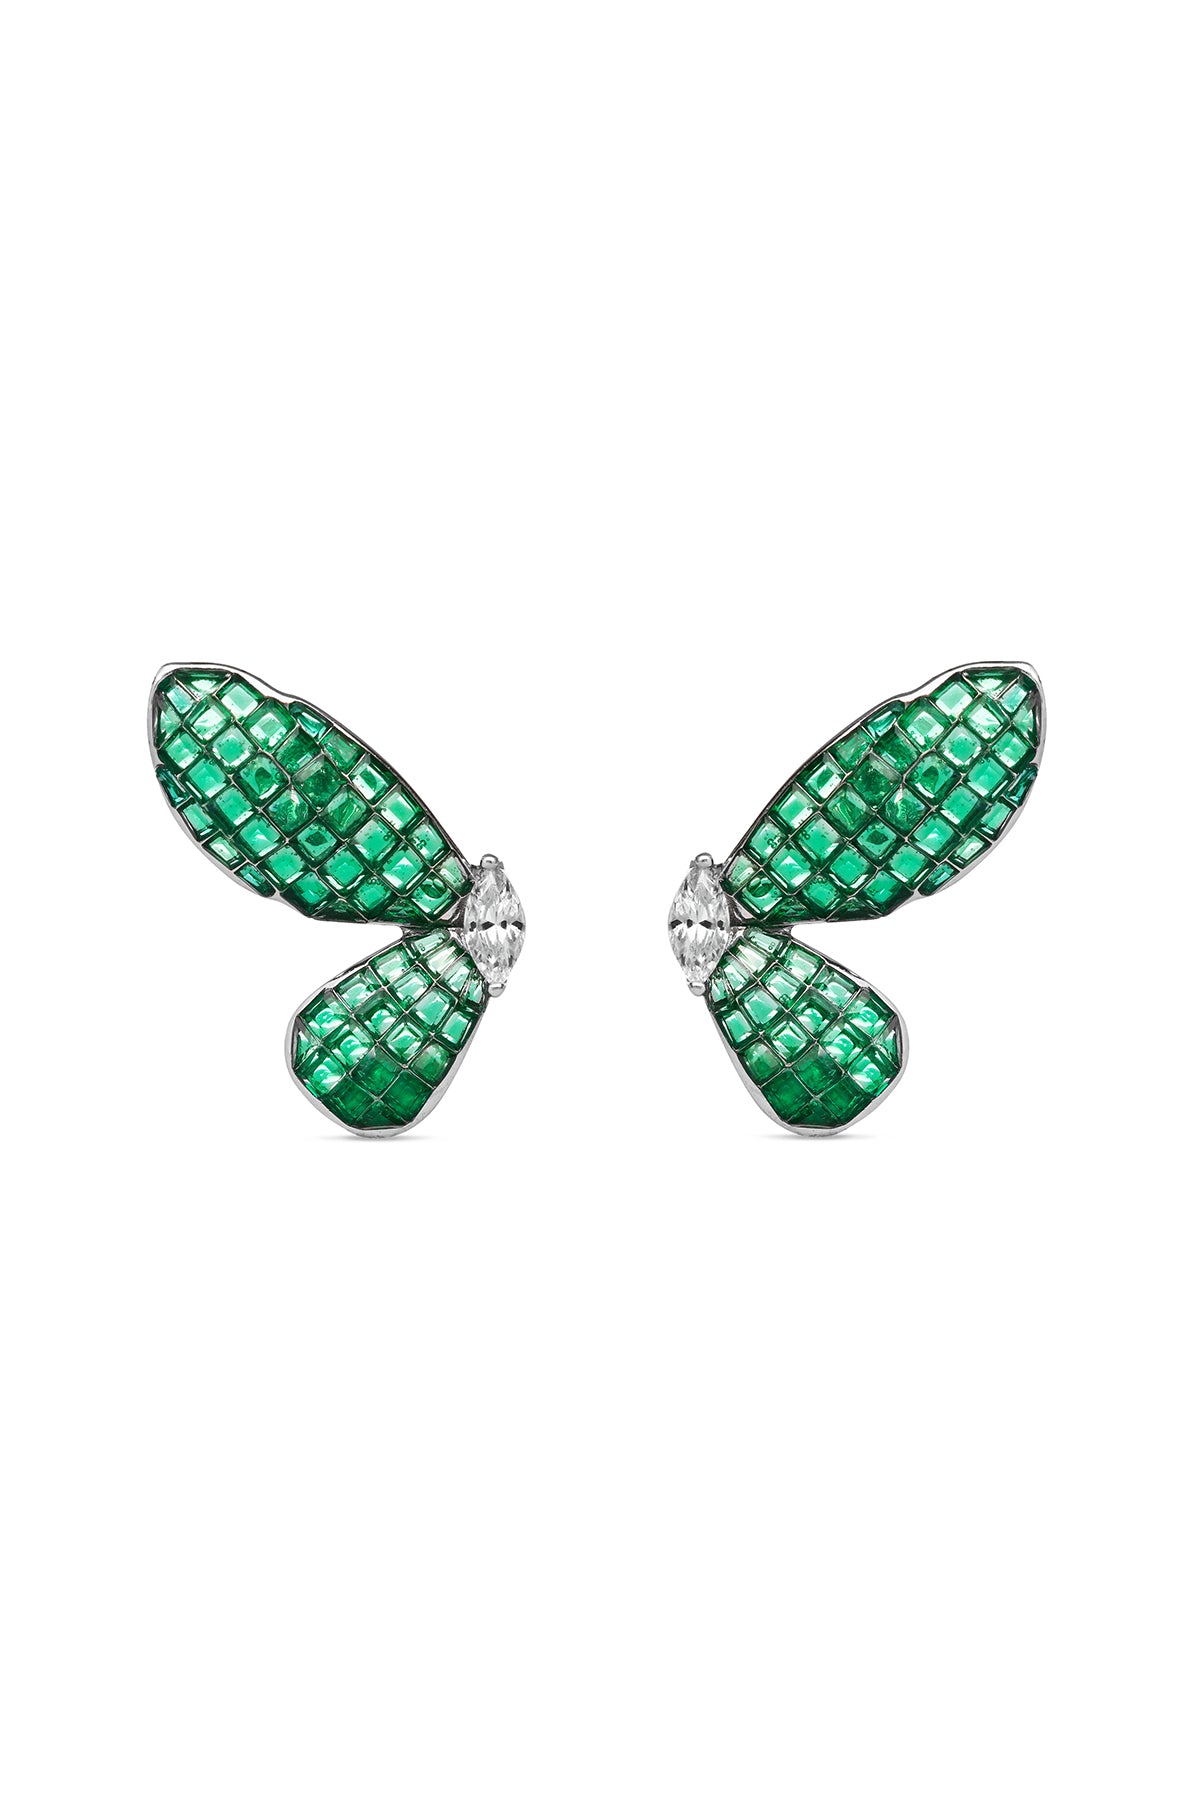 Butterfly Emerald Green Ballet Earrings